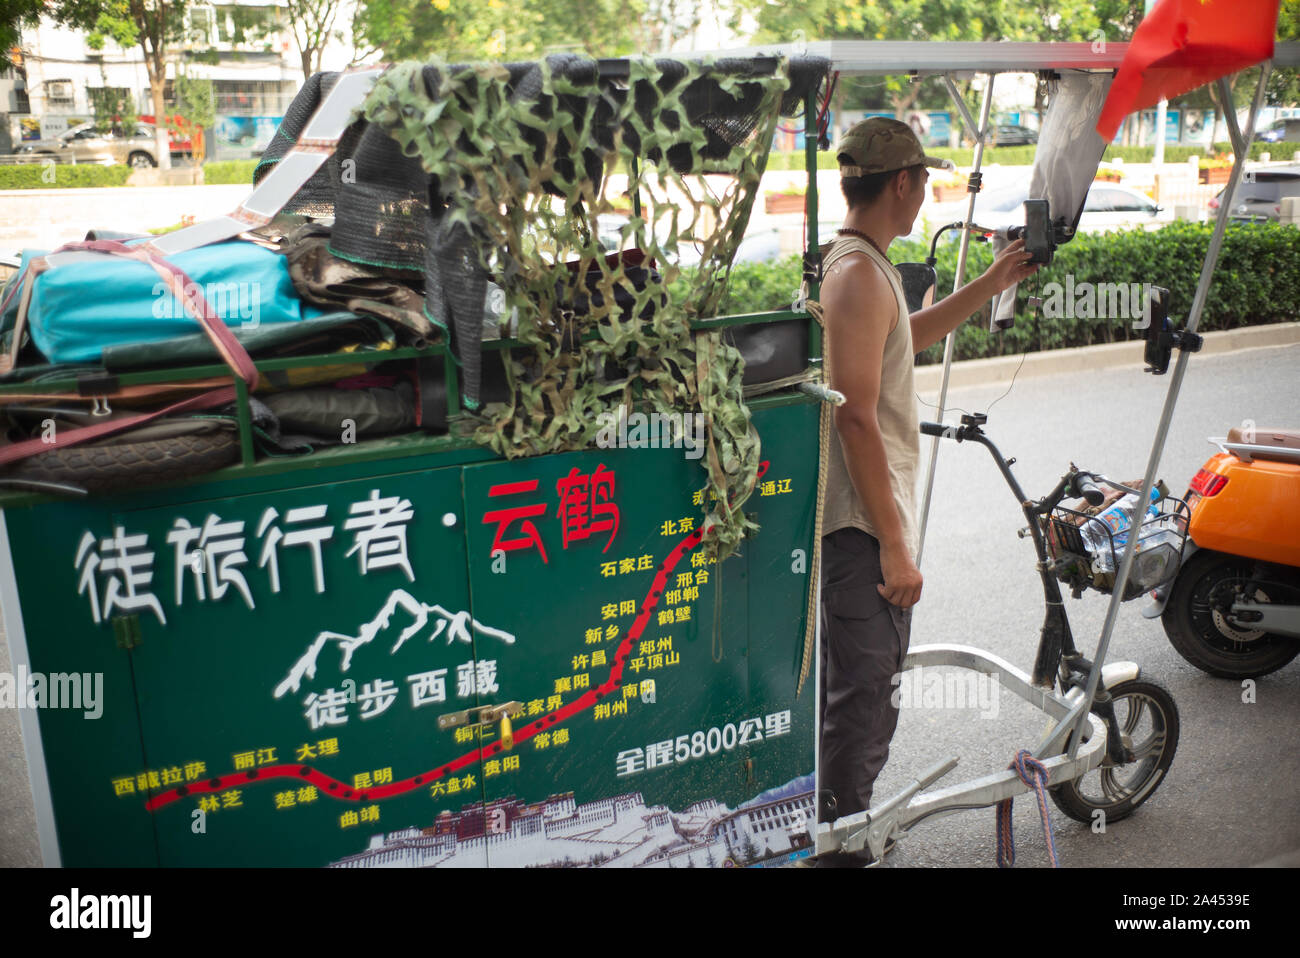 Yunhe partage son voyage via internet livestream à Beijing, Chine, le 8 août 2019. Yunhe, le nom de l'homme qui tente de marcher du nord de la Chine Banque D'Images